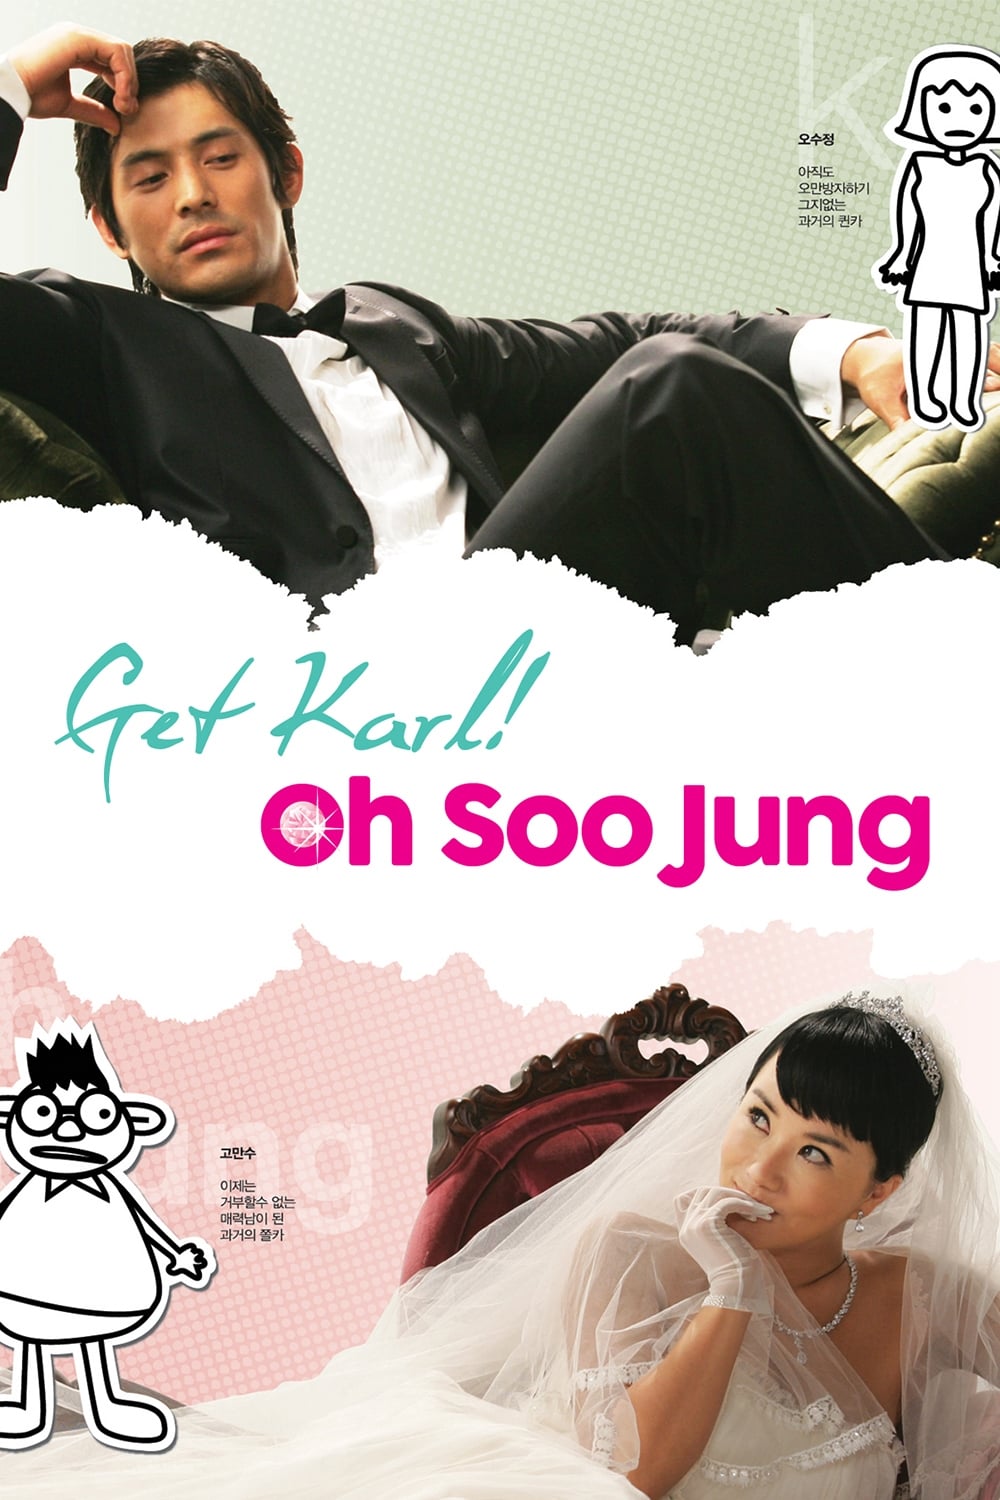 Get Karl! Oh Soo Jung